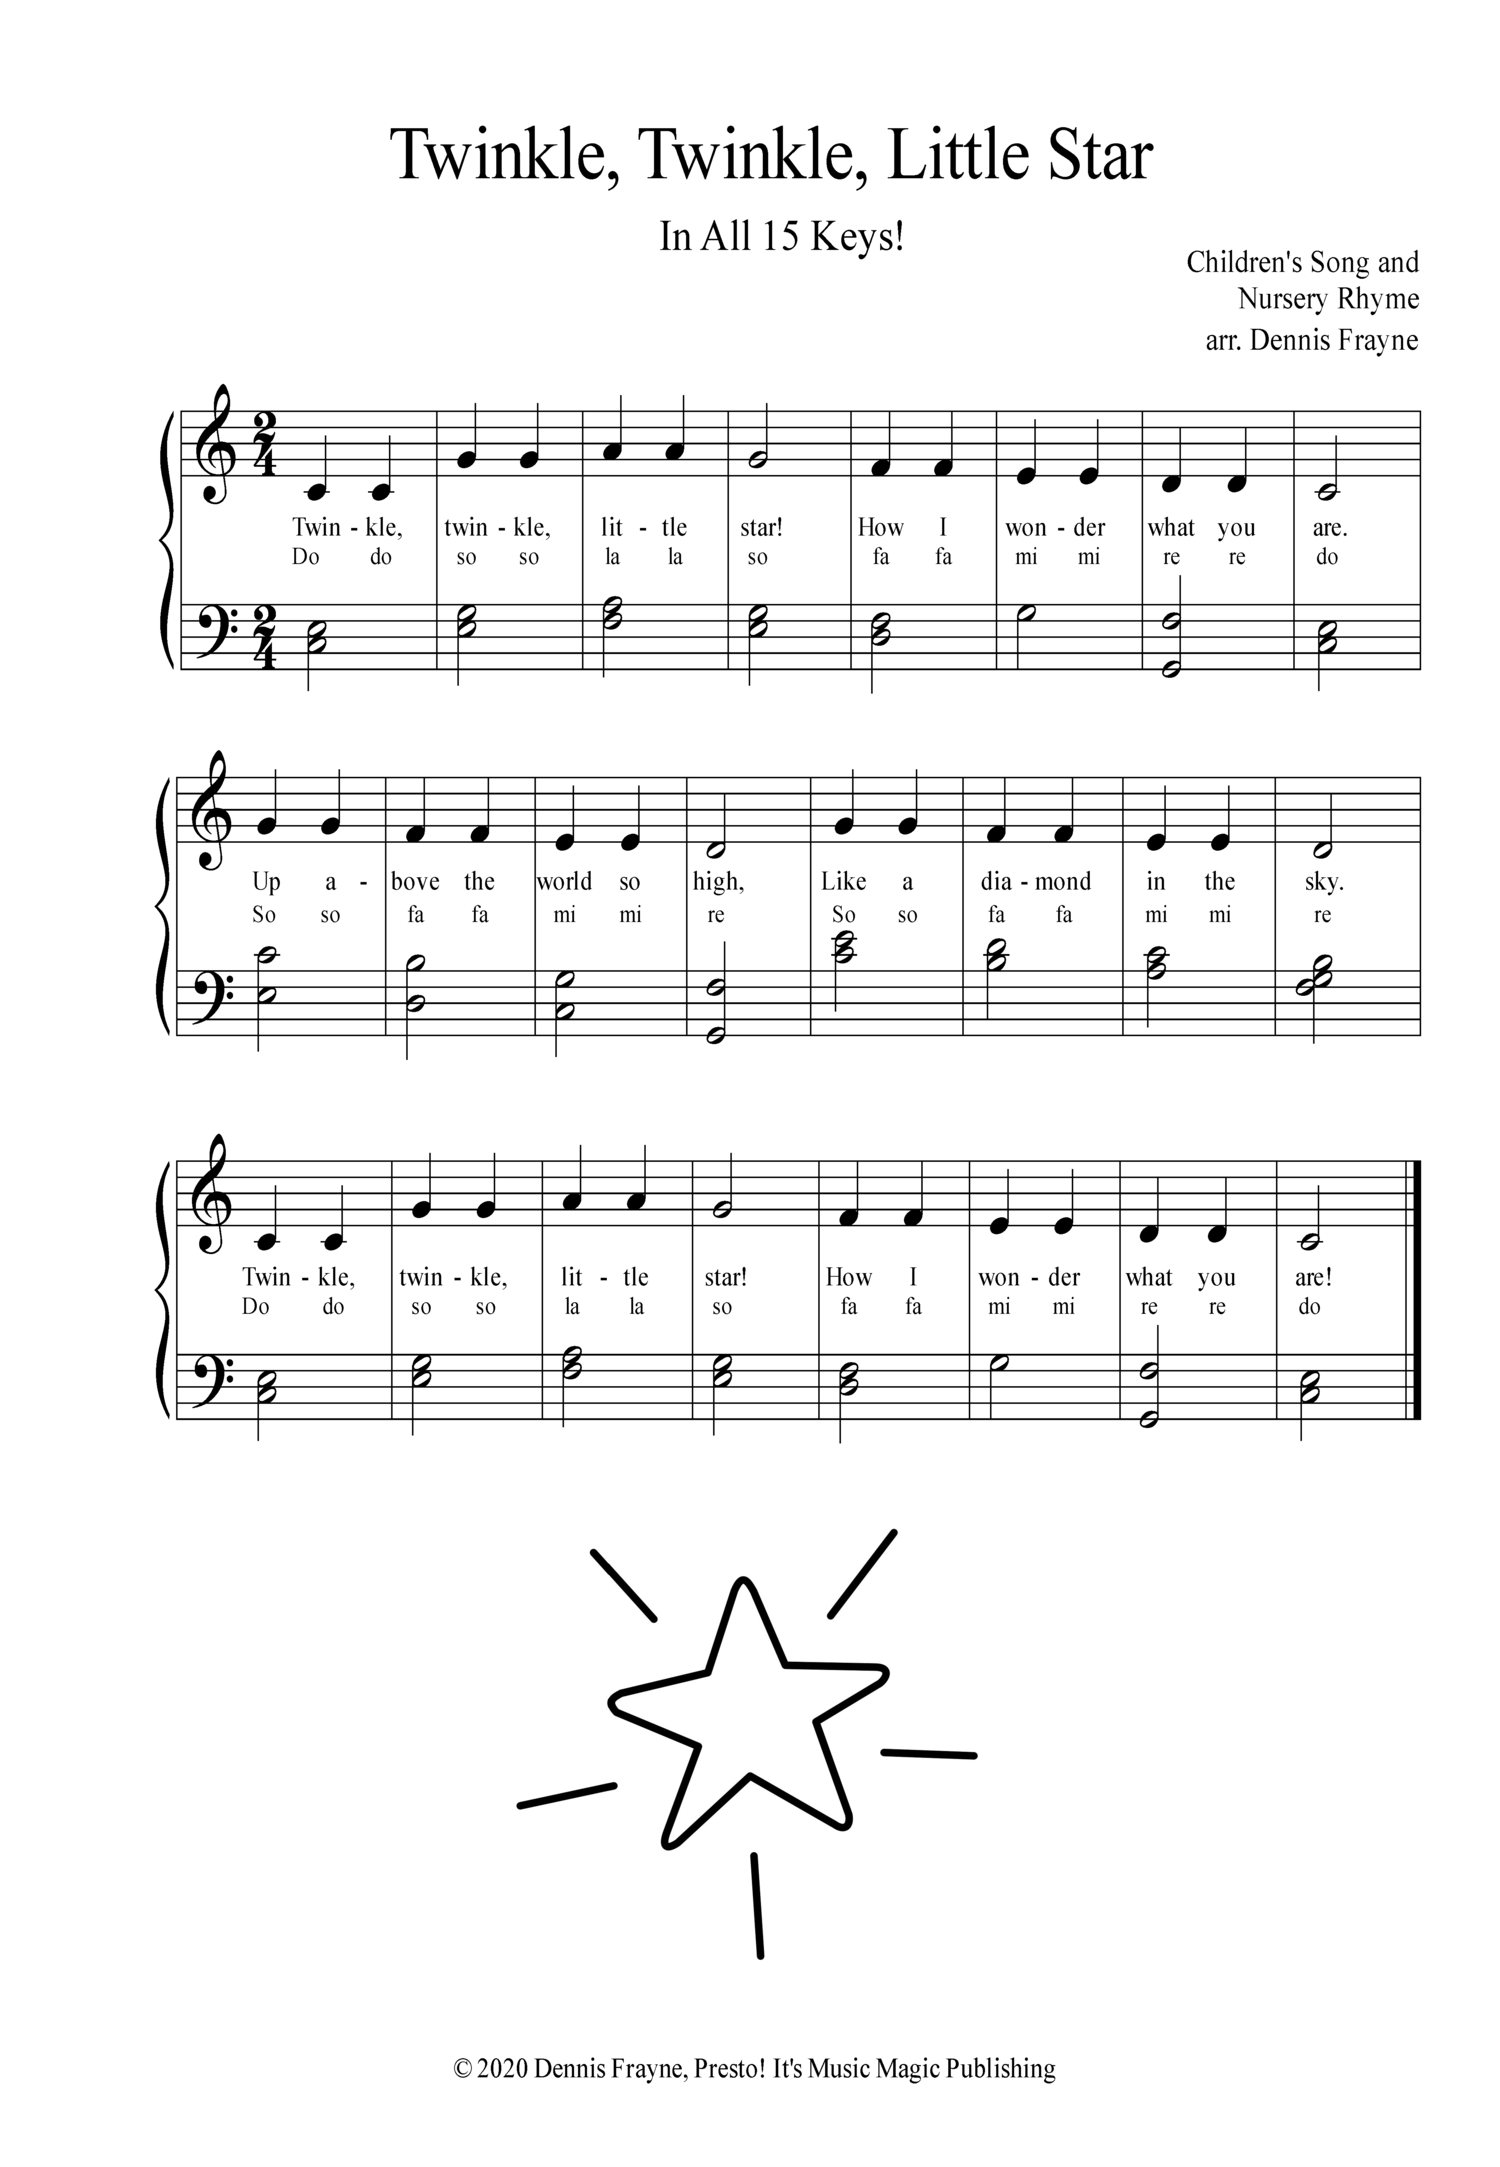 Twinkle, Twinkle, Little Star - In All 15 (Major) Keys! — Presto! It's  Music Magic Publishing